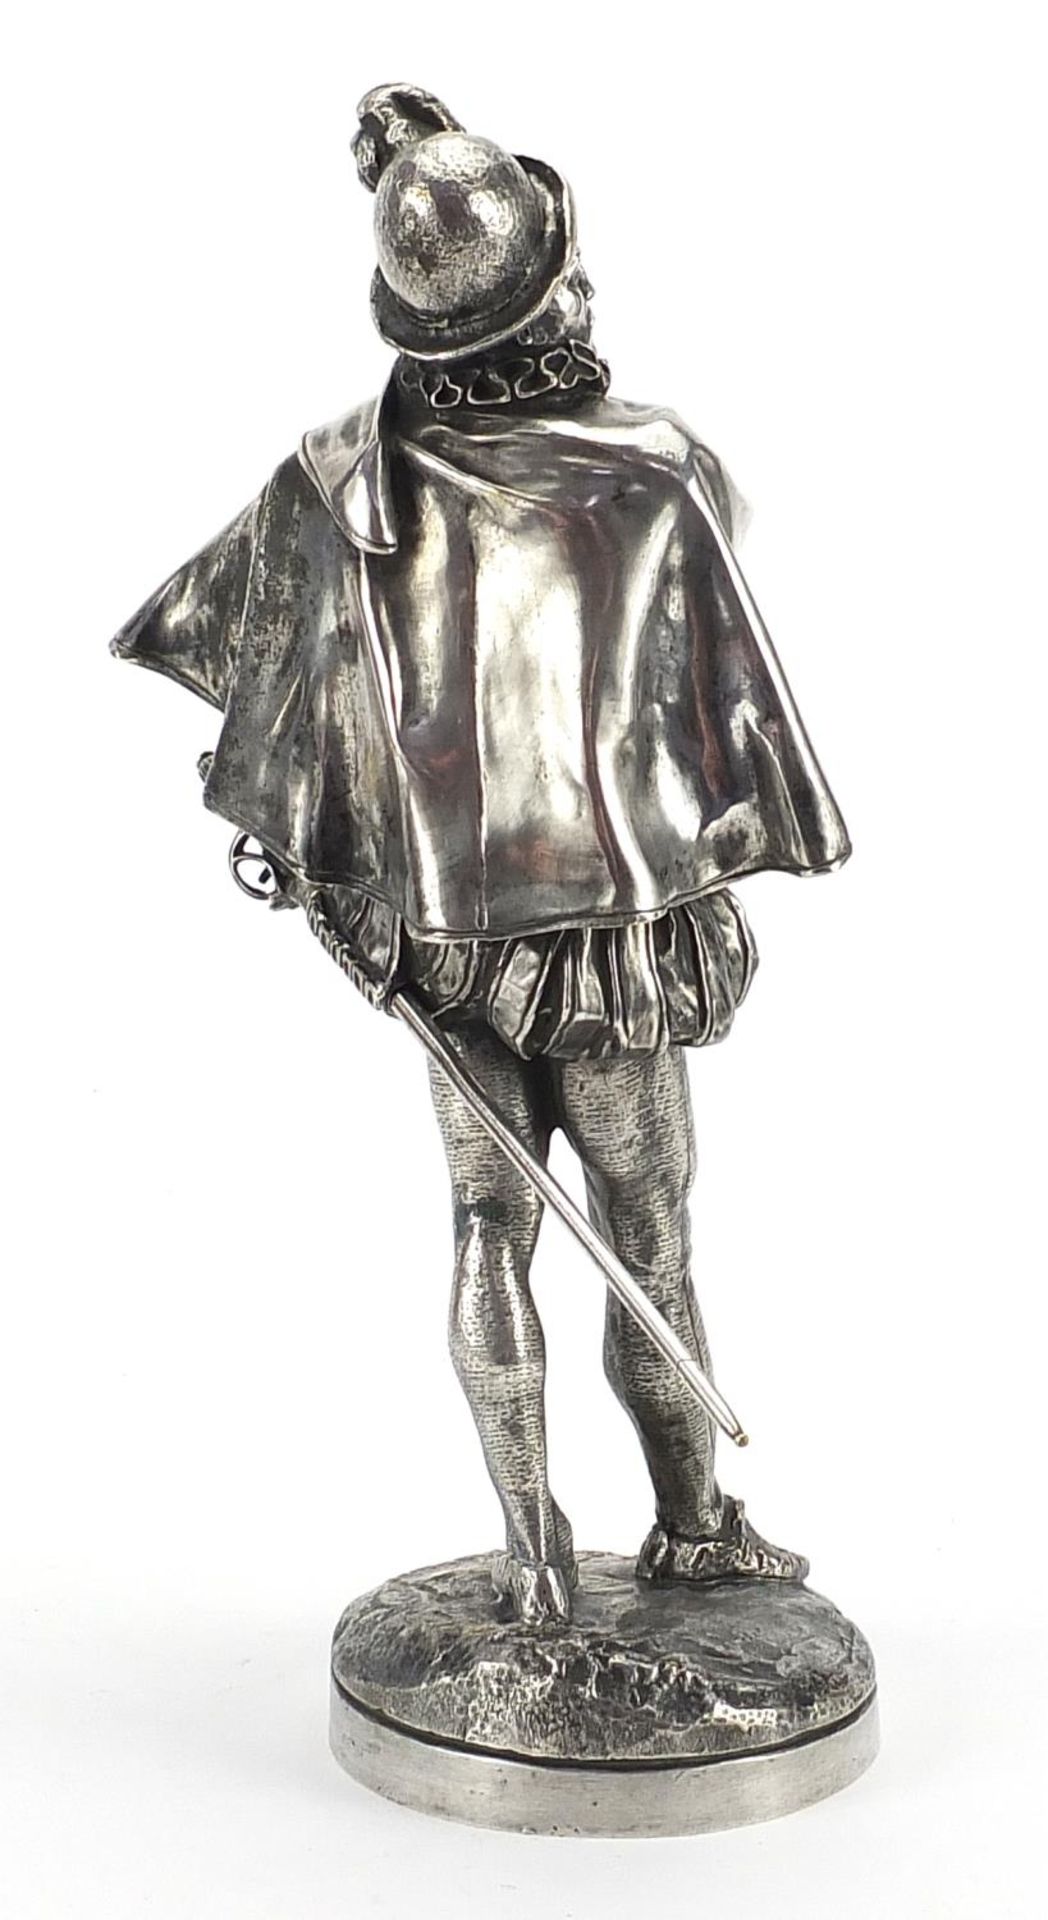 Emmanuel Fremiet, silvered bronze figure of a swordsman, 33cm high - Image 2 of 4